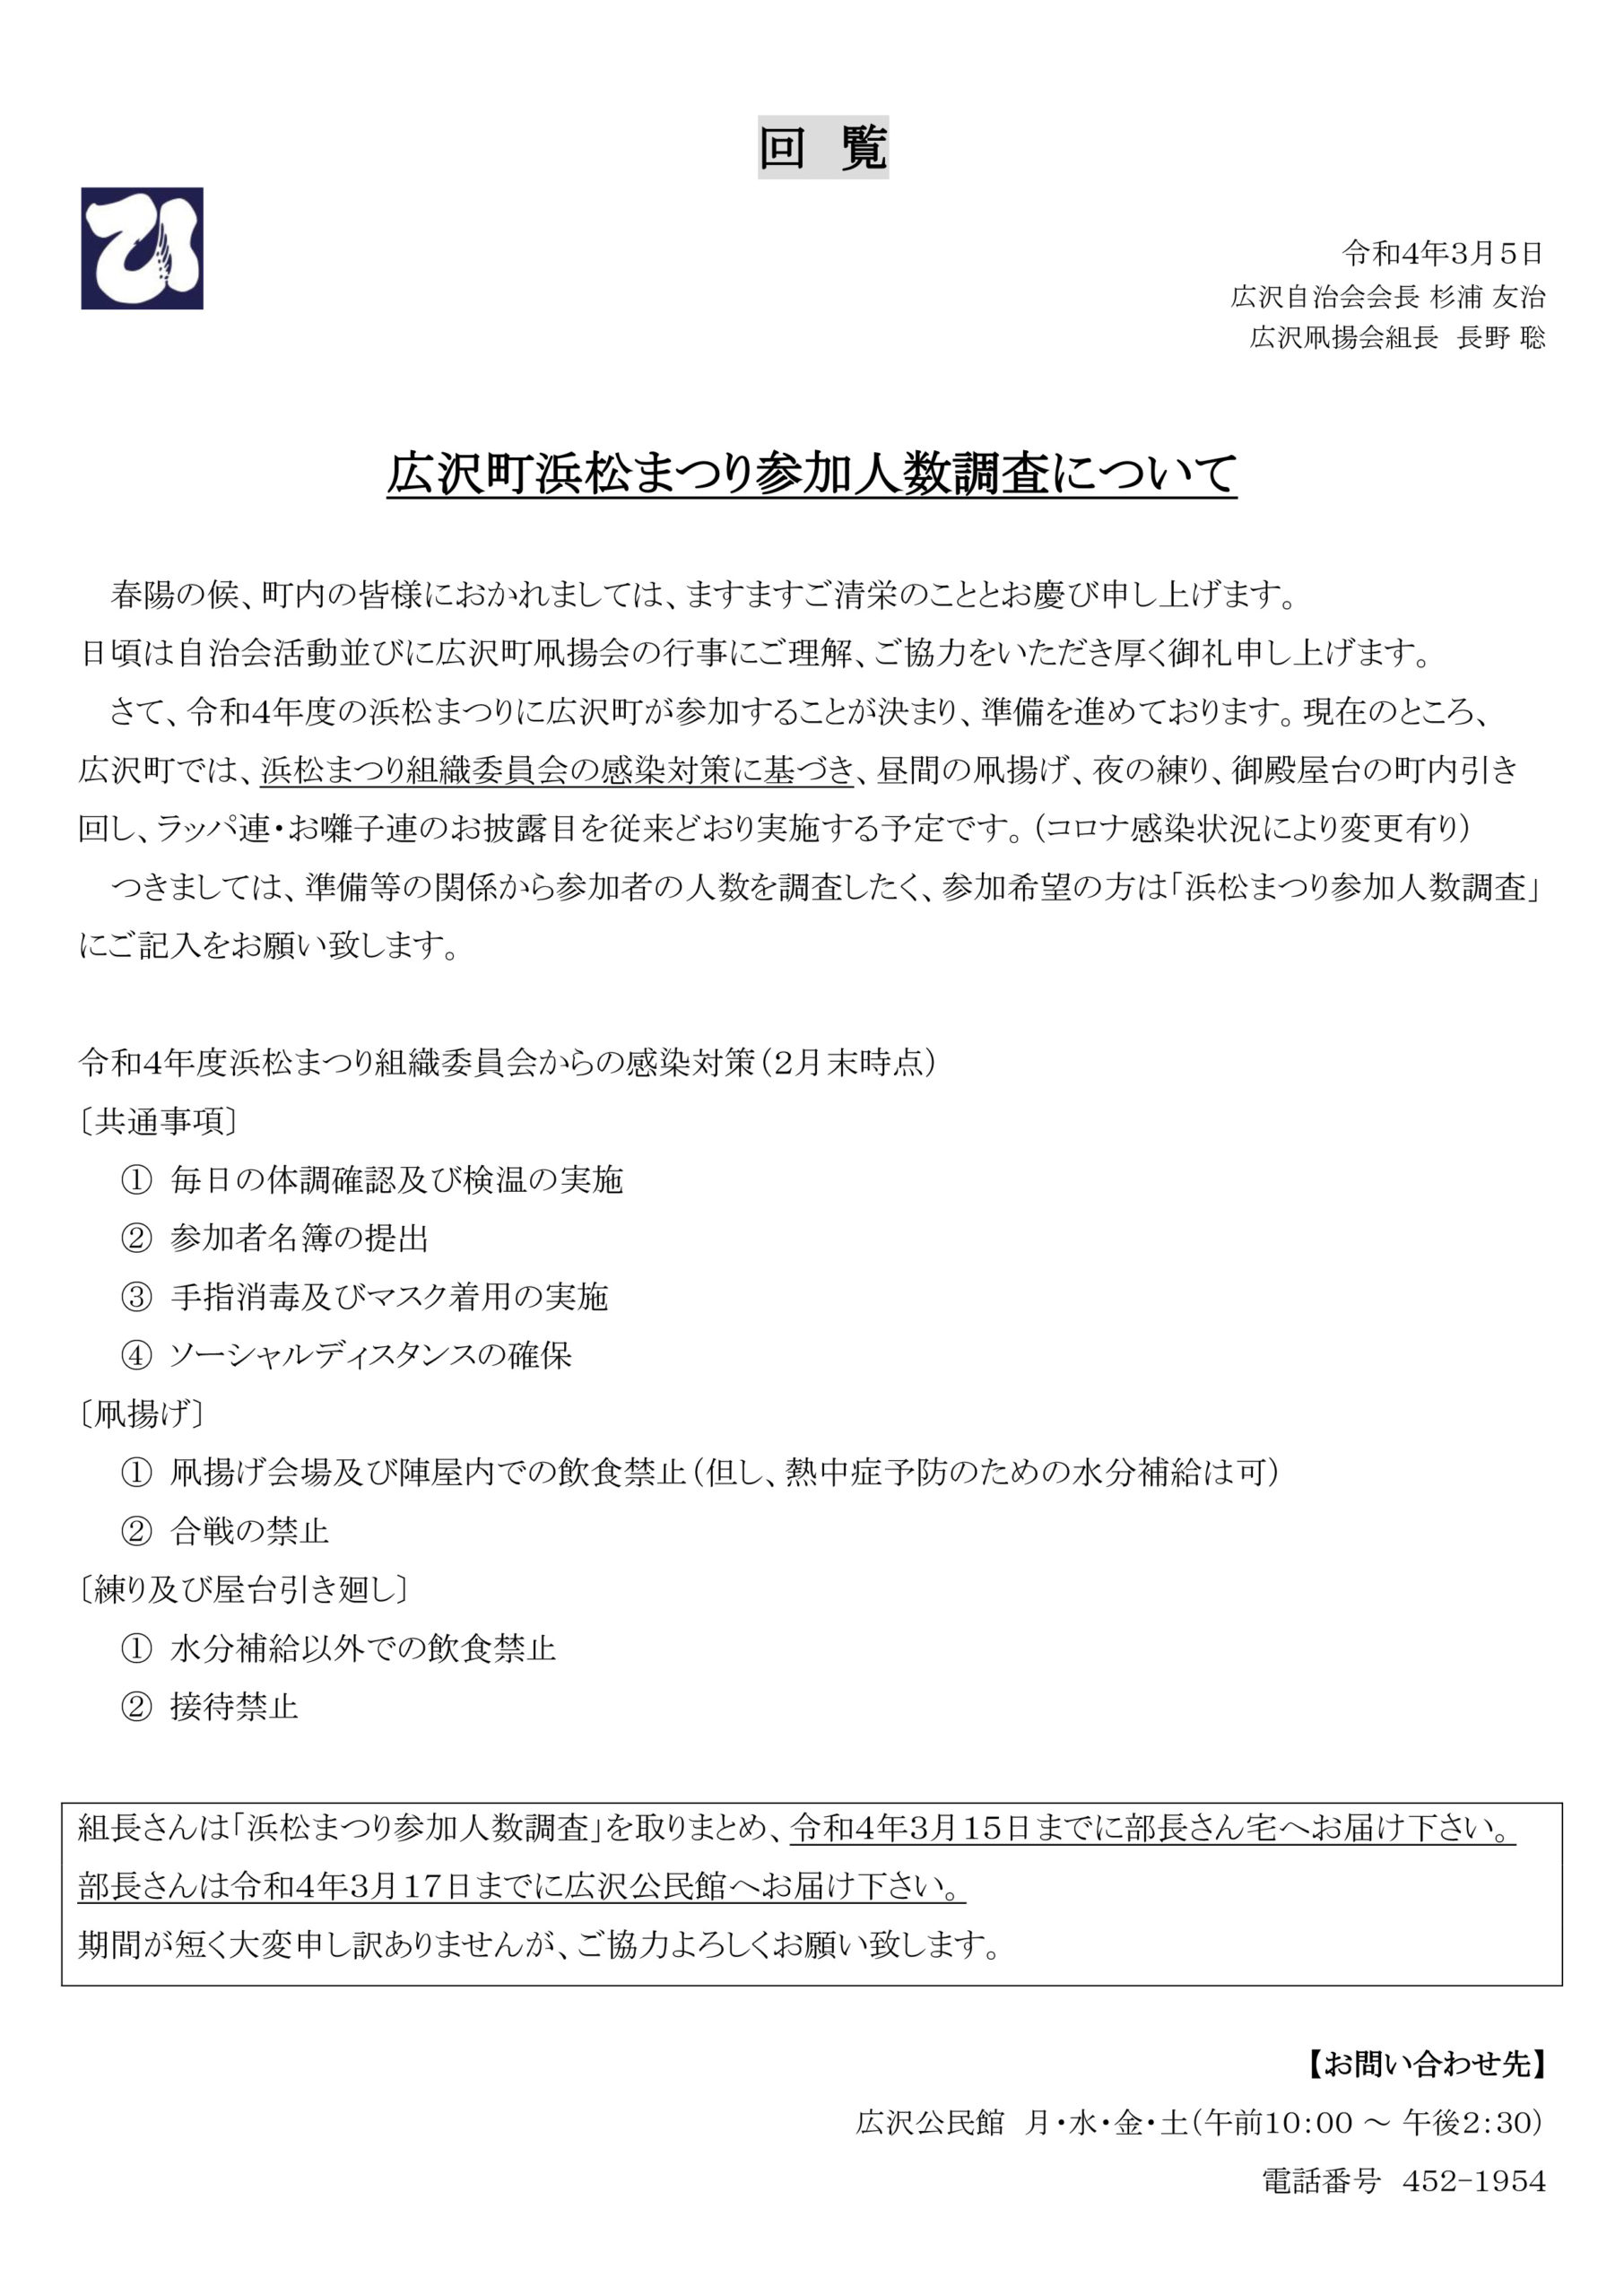 【回覧資料 令和4年3月5日】広沢町浜松まつり参加人数調査について